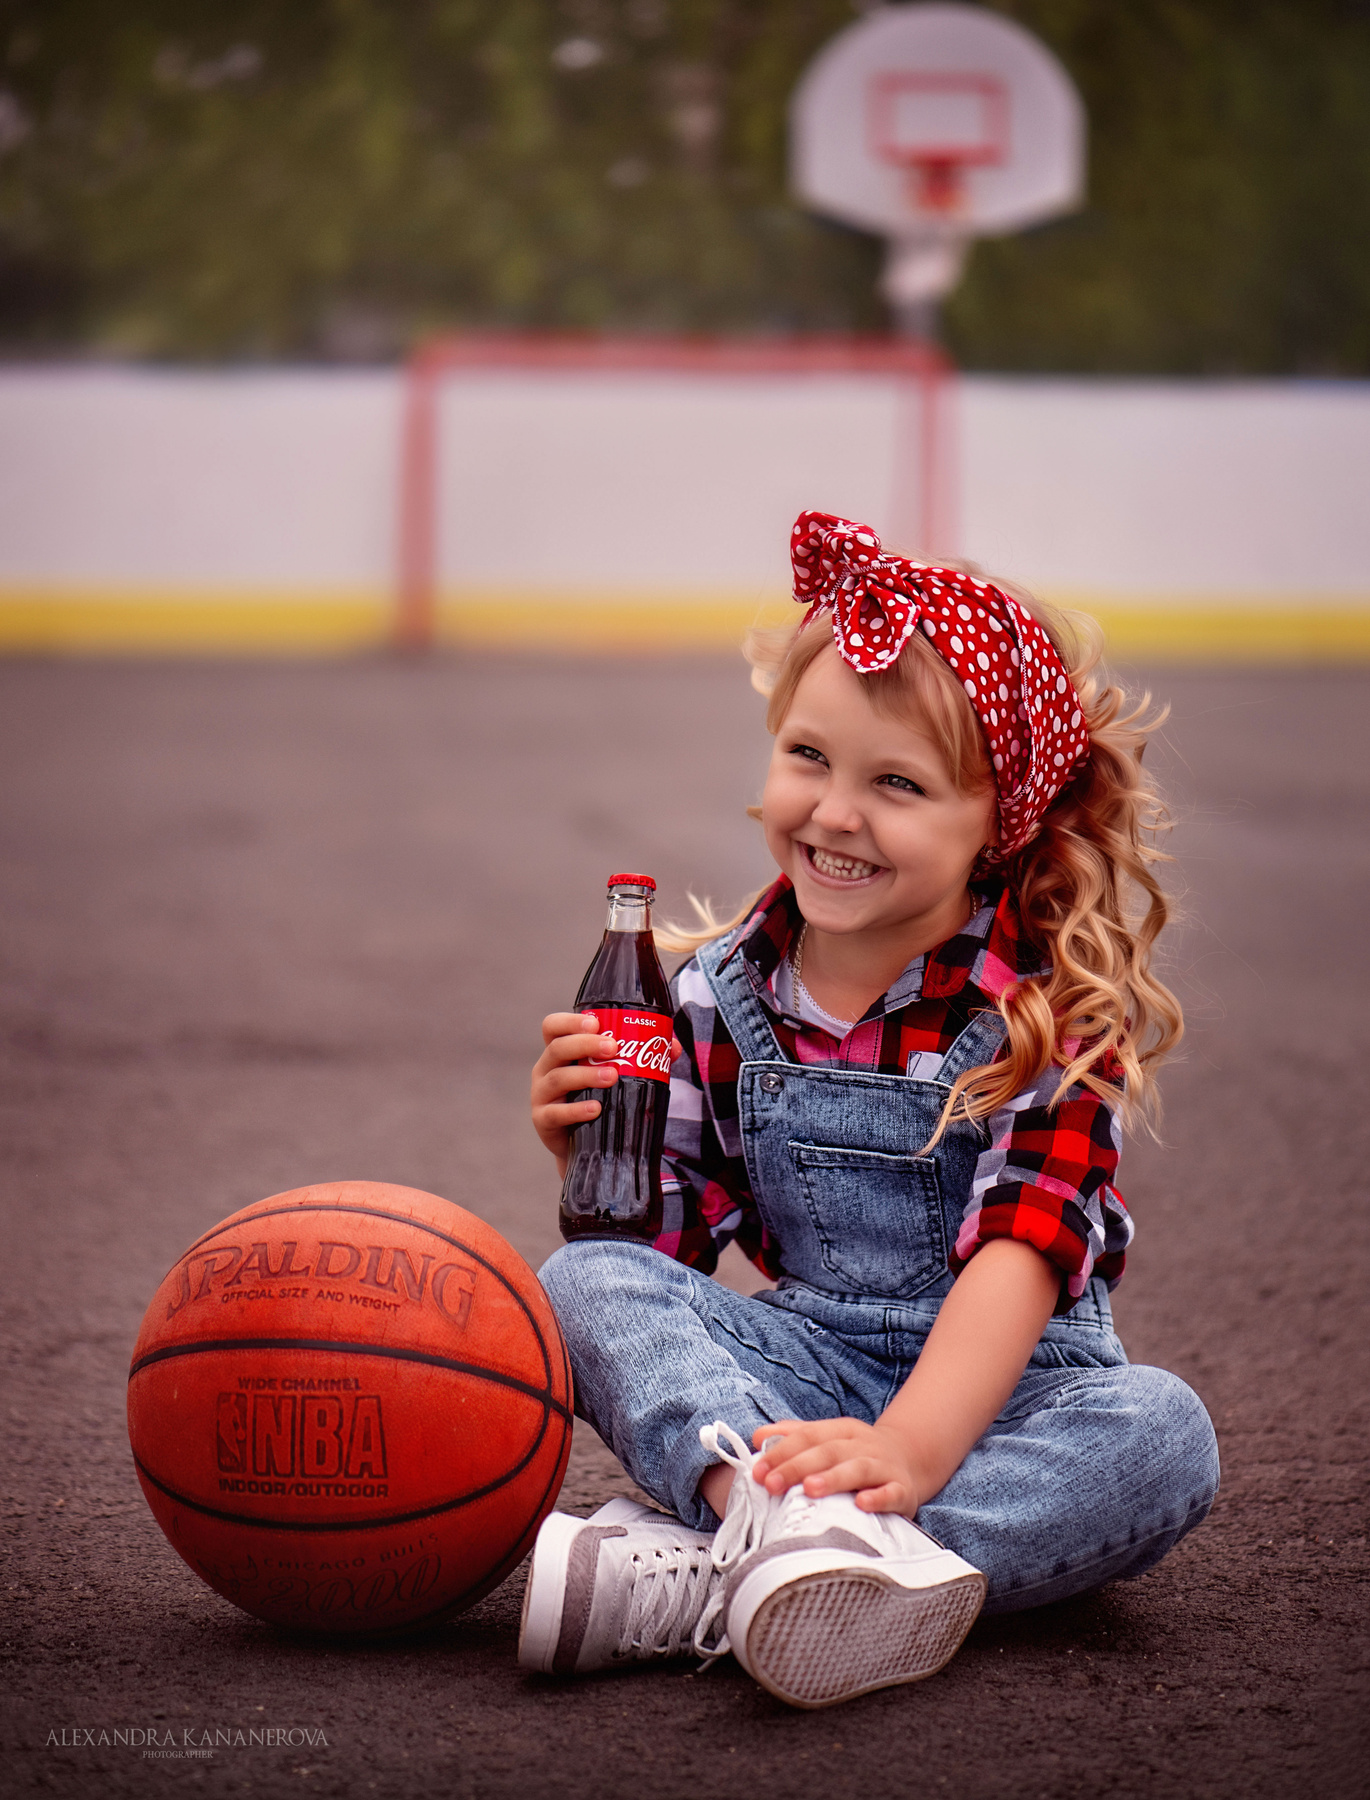 Девочка на баскетбольной площадке Девочка баскетбол мяч портрет америка pin up American